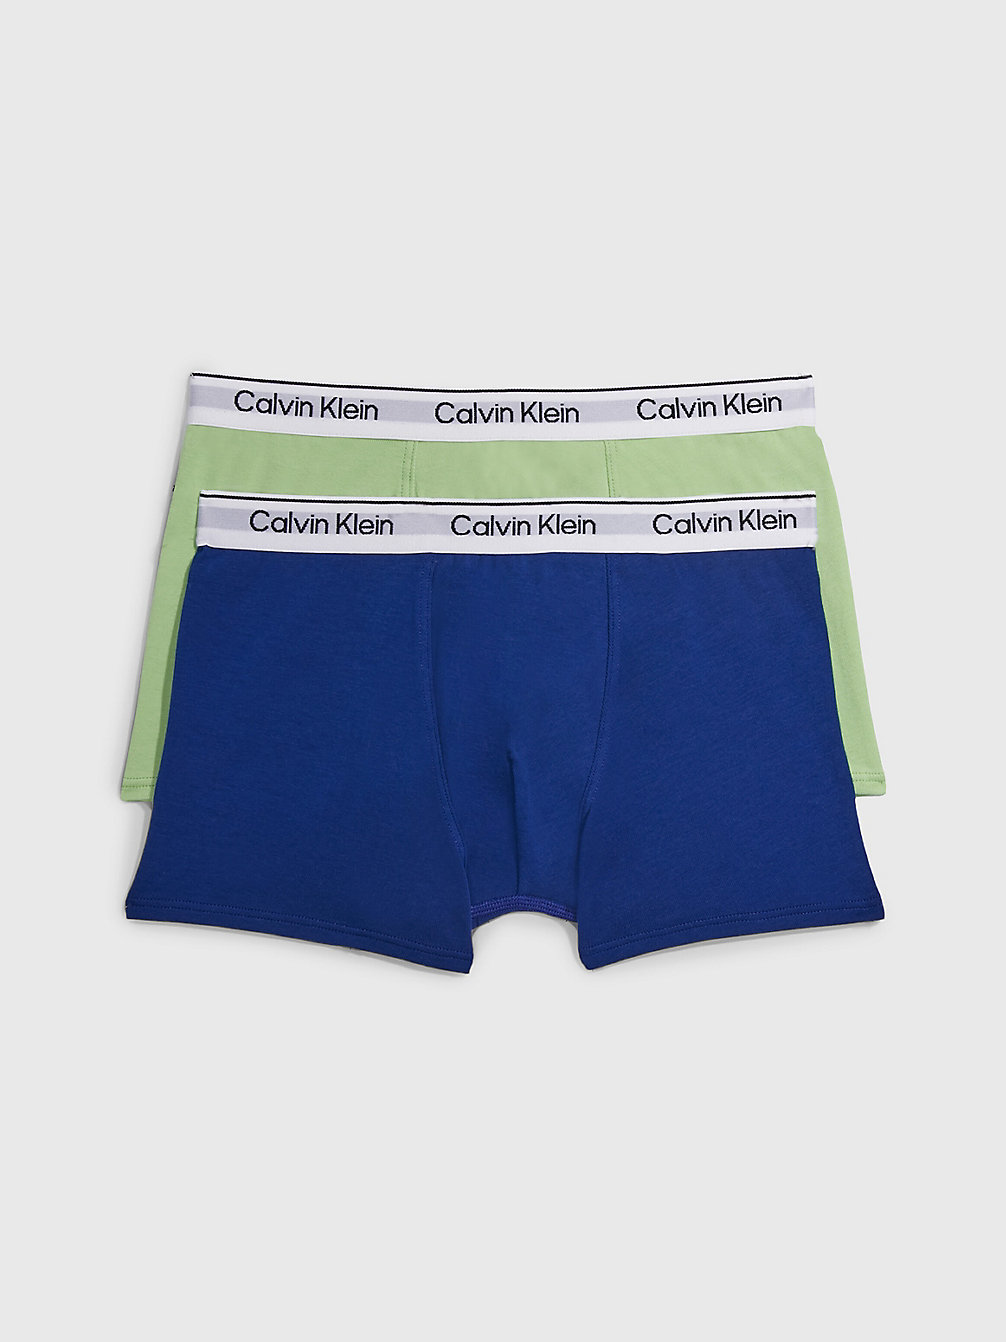 SPRINGFERN/BOLDBLUE 2er-Pack Boxershorts Für Jungen - Modern Cotton undefined Jungen Calvin Klein